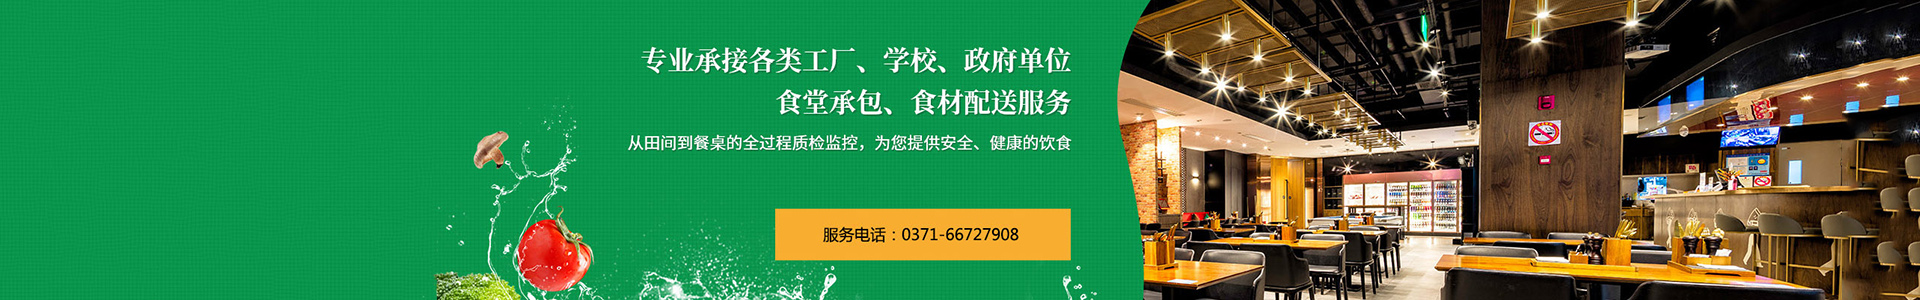 河南兰红餐饮管理有限公司-官网